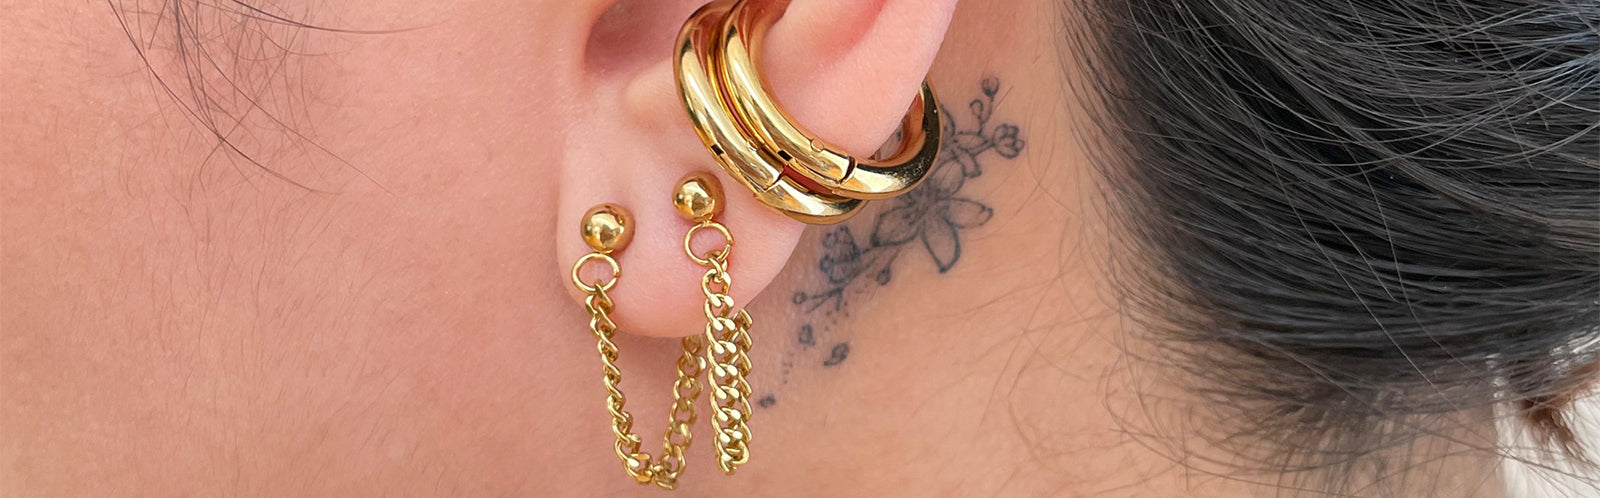 best earrings waterproof jewelry tarnish free